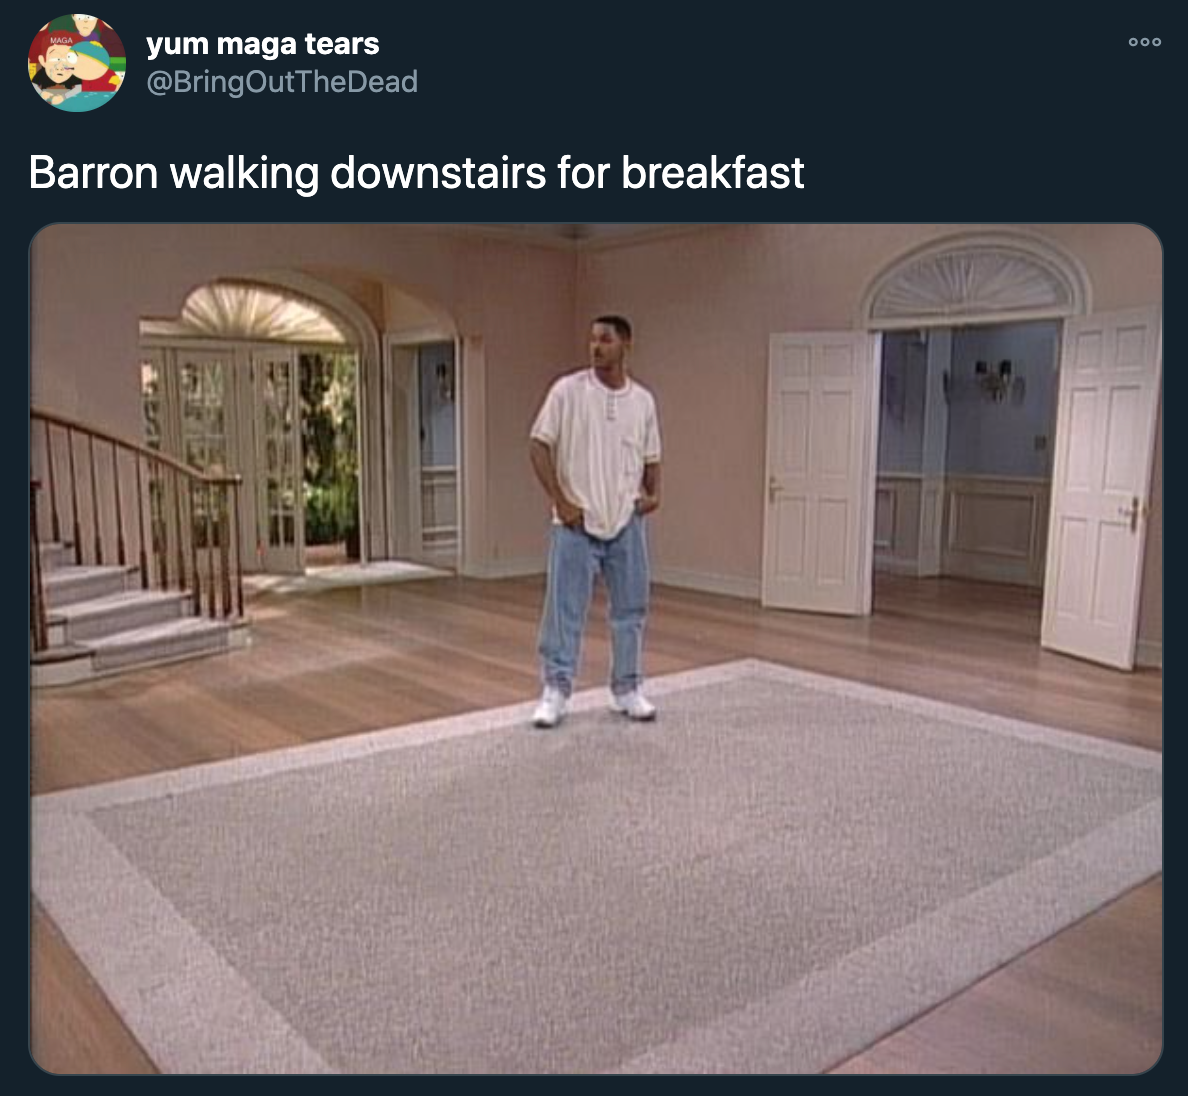 joe biden inauguration jokes - barron walking downstairs for breakfast